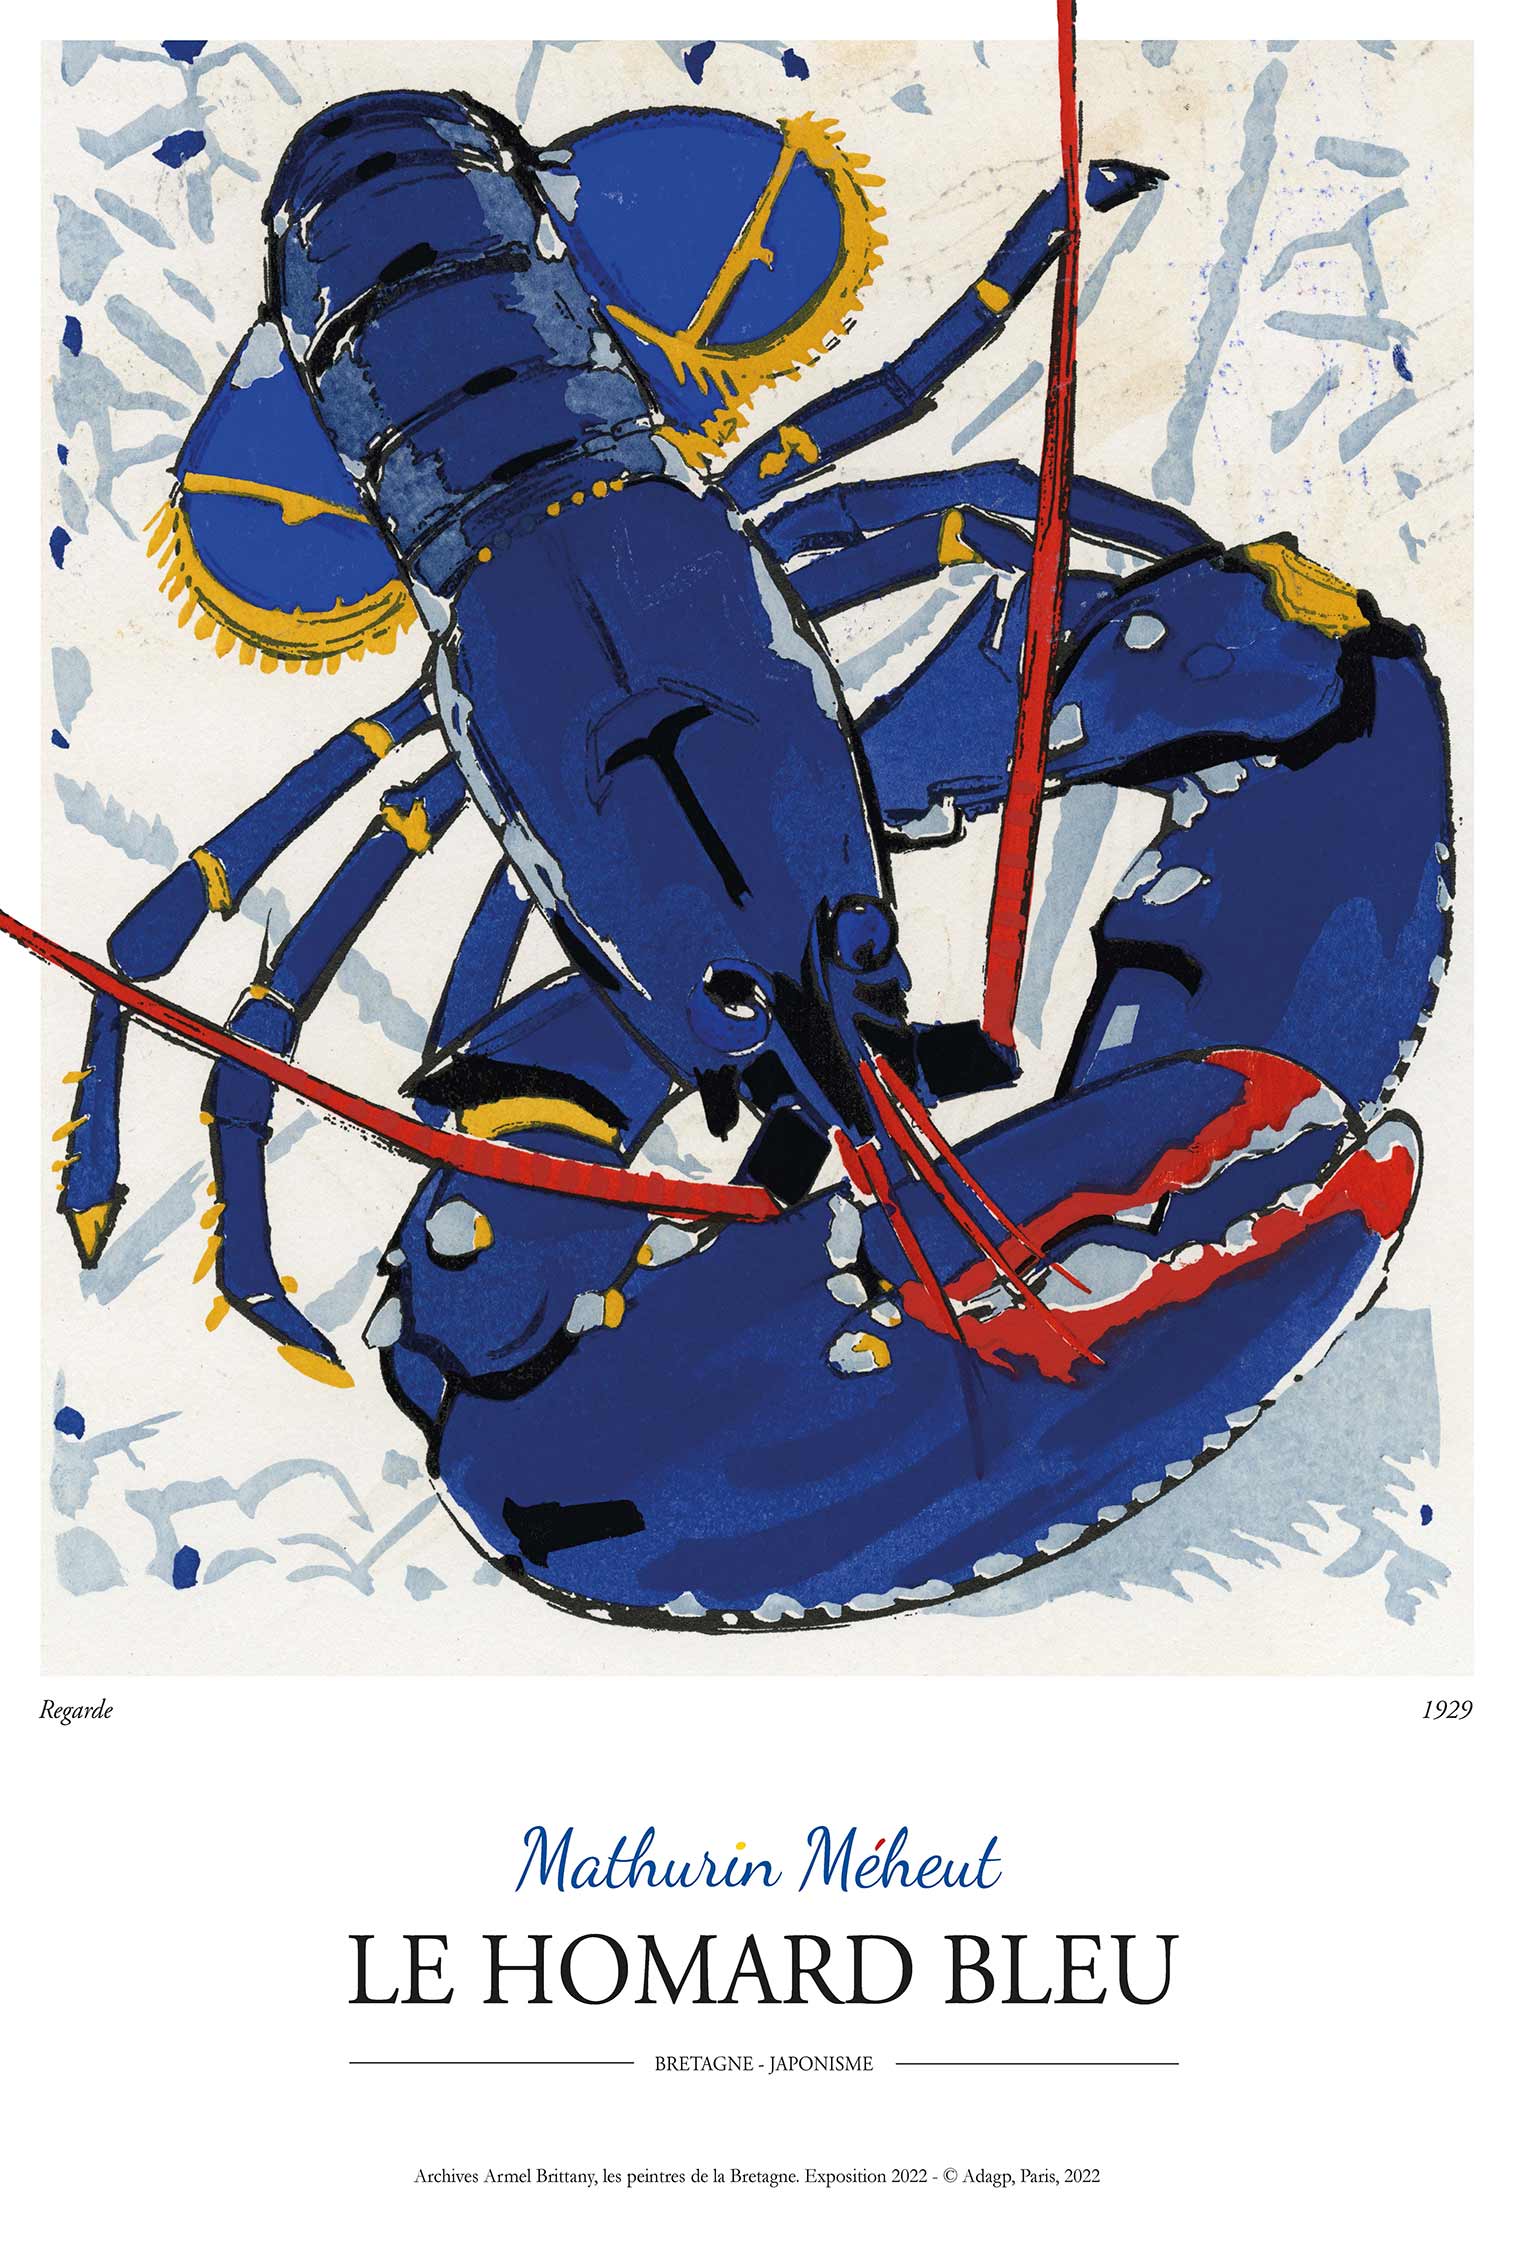 Mathurin meheut peintre officiel de la marine homard bleu regarde colette poster reproduction travel poster